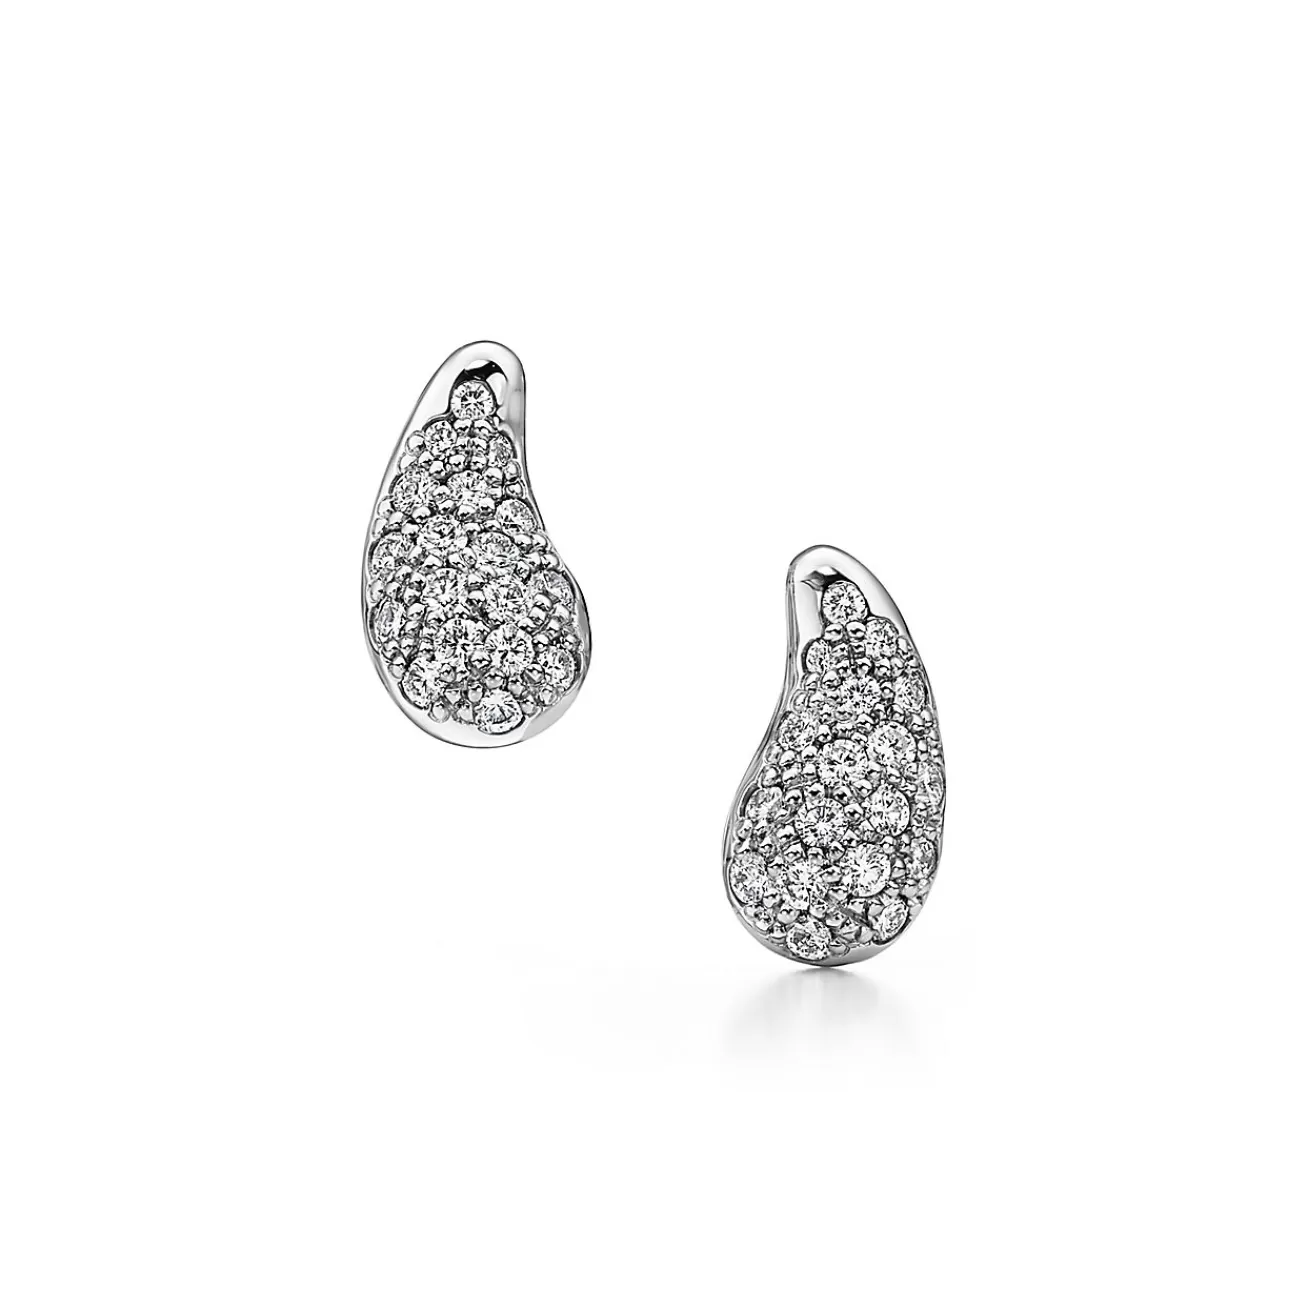 Tiffany & Co. Elsa Peretti® Teardrop earrings in platinum with diamonds. | ^ Earrings | Elsa Peretti®